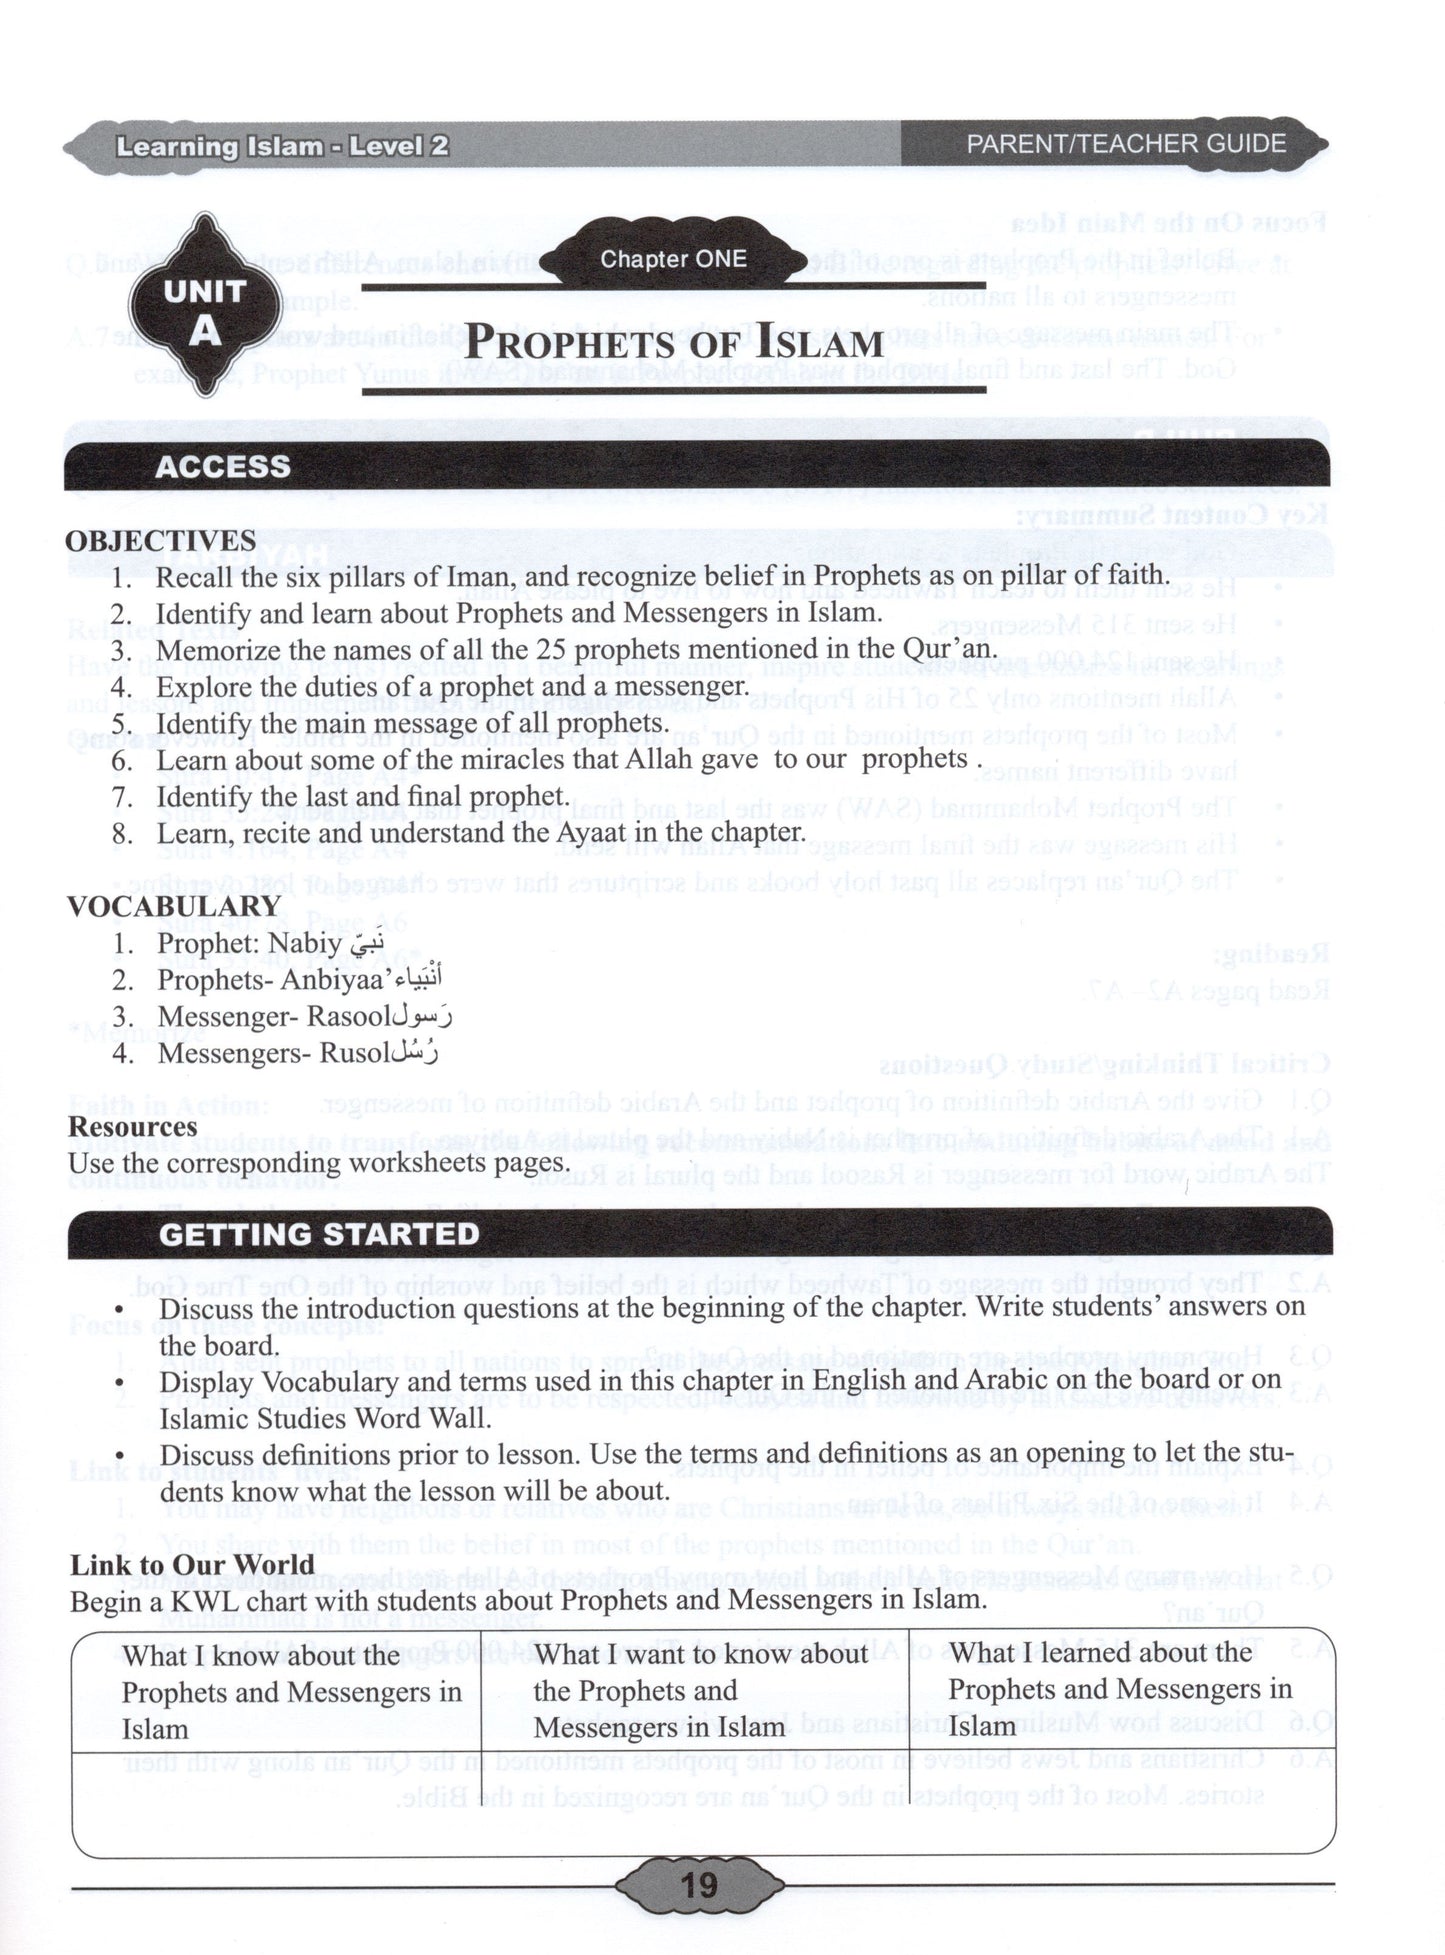 Learning Islam Parent/Teacher Guide Level 2 (Grade 7)